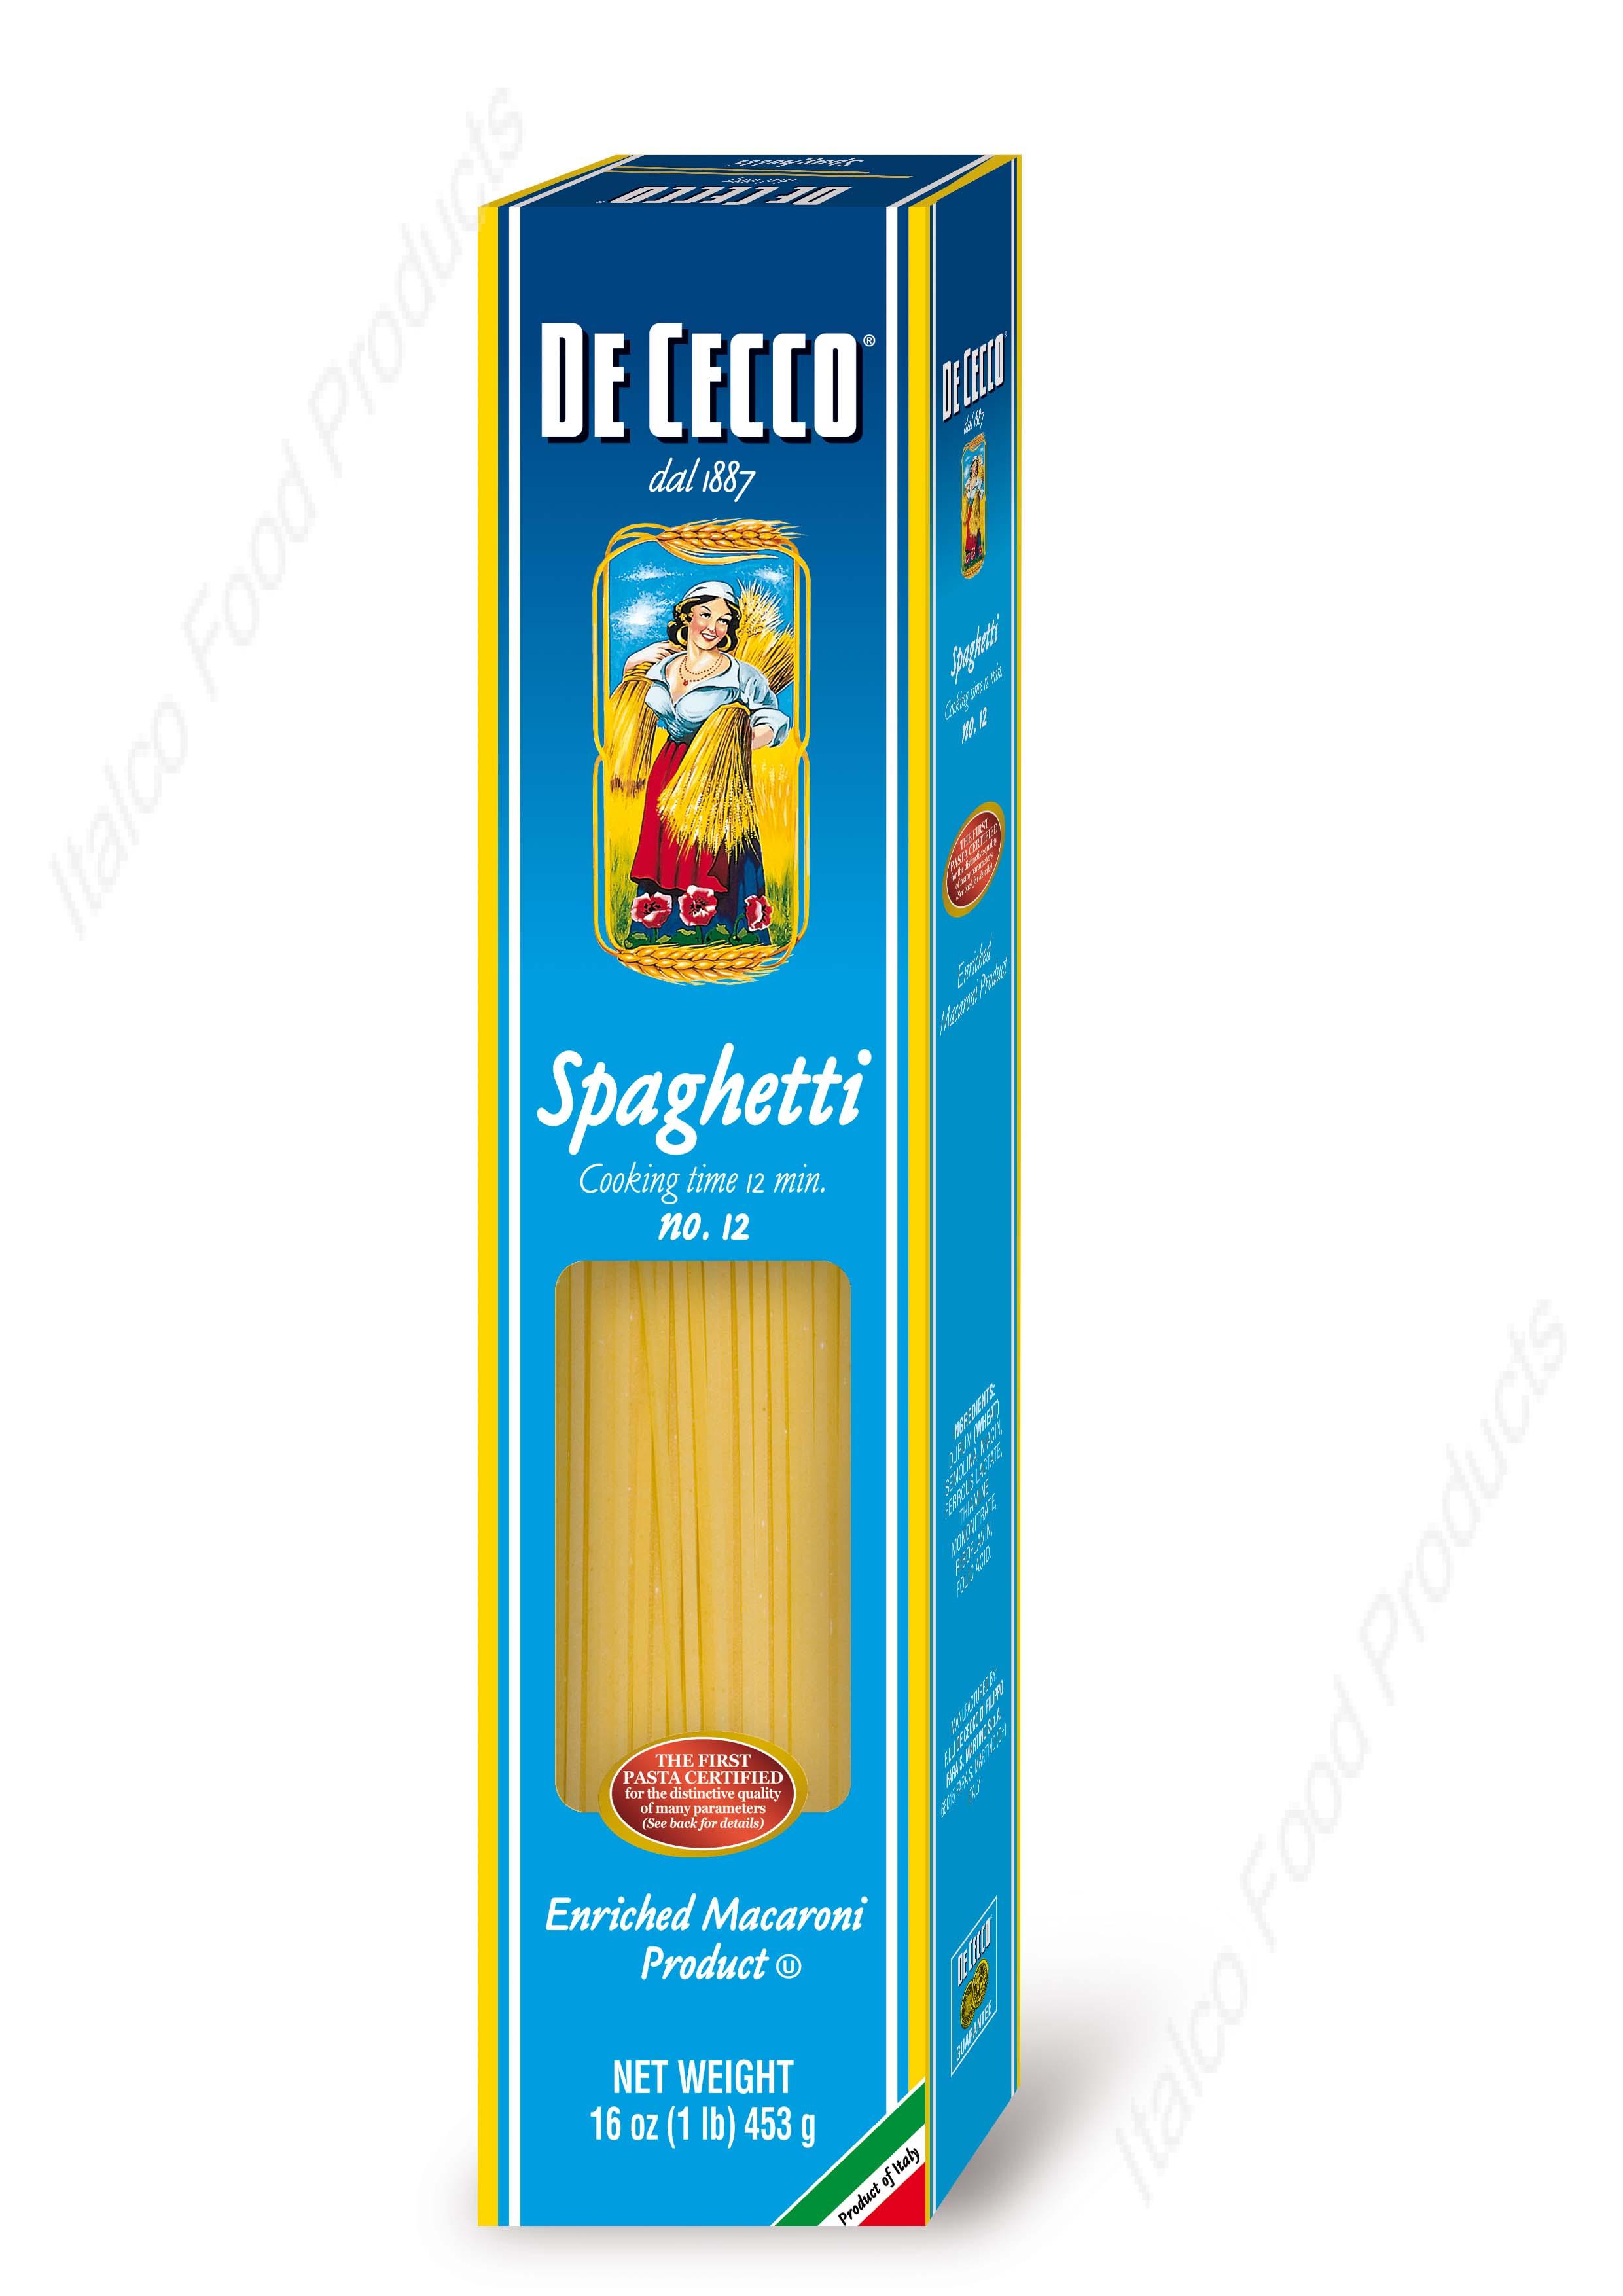 De Cecco Spaghetti